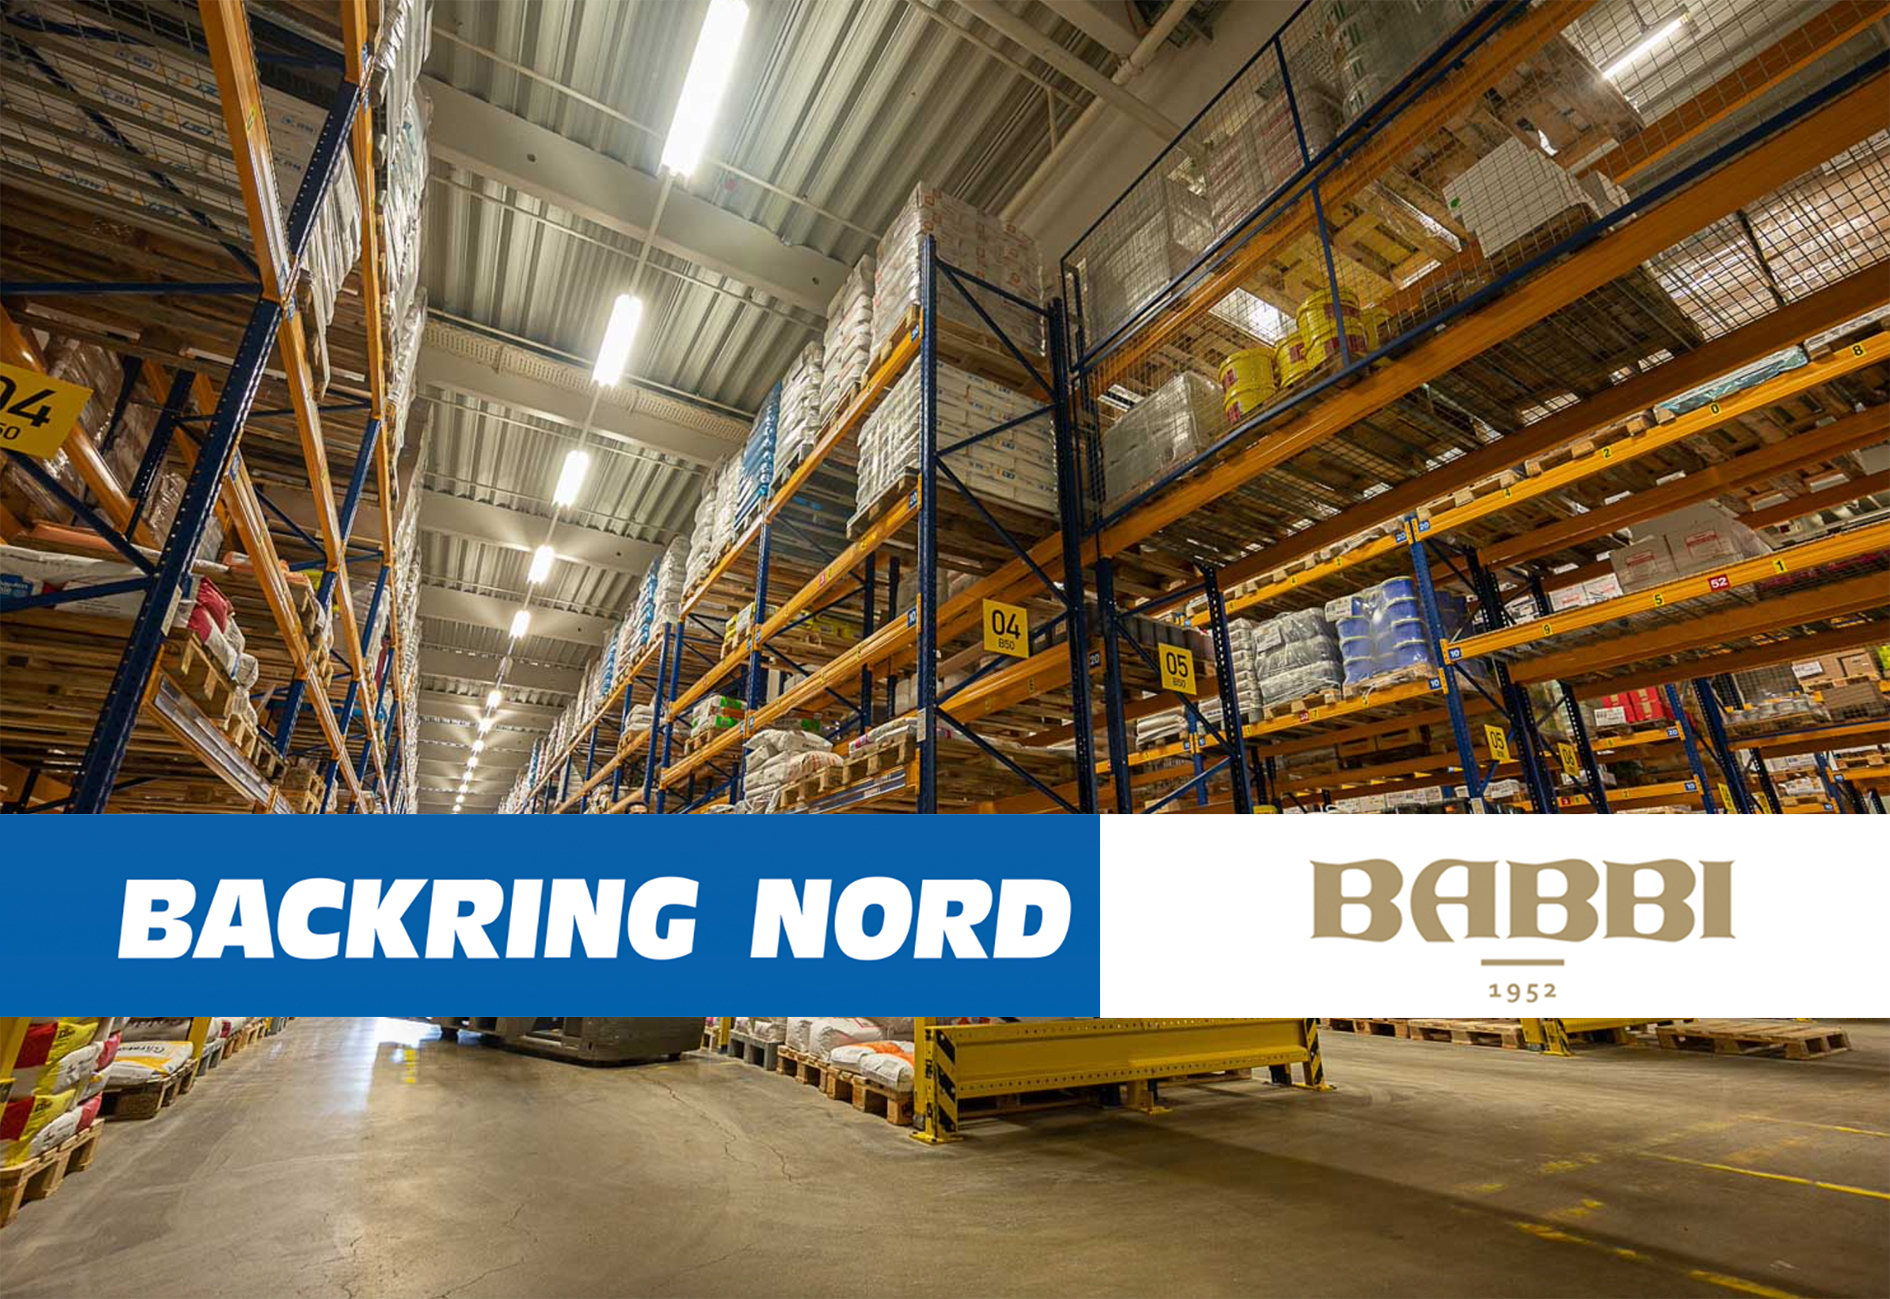 Zusammenarbeit: Backring Nord und Babbi